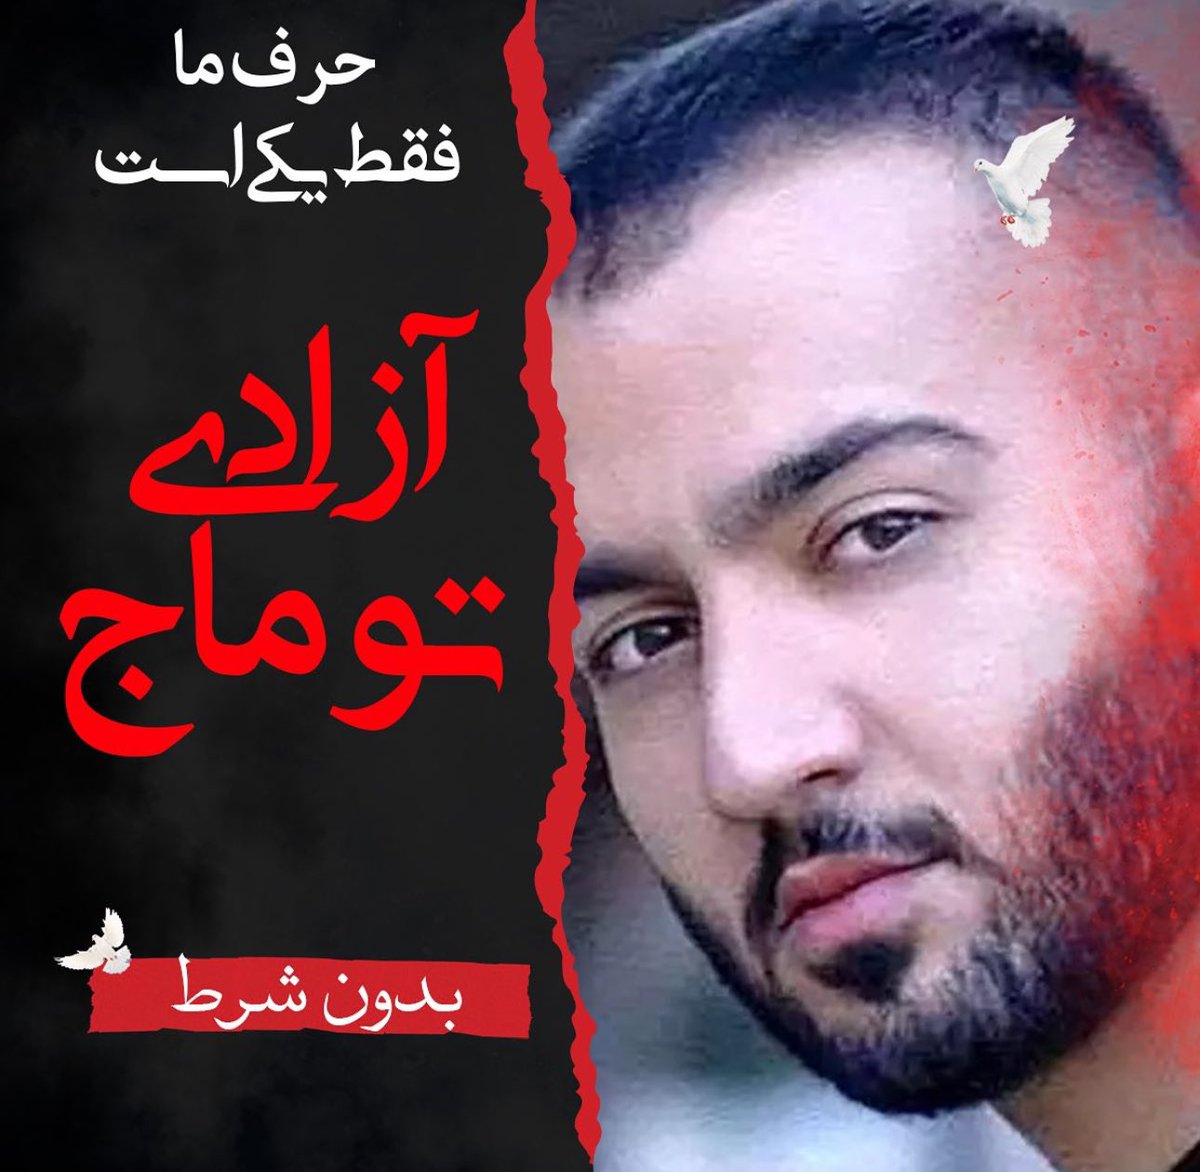 آزادیِ #توماج_صالحی ، مقدمه آزادی همگی مردم ایران از ۴۵ سال غارت و جنایت در این سرزمین خواهد بود؛ پس مبارزه برای توماج، مبارزه برای سرنوشت همگی ماست 🙏🏻❤️✌🏻 #FreeToomaj #ToomajSalehi